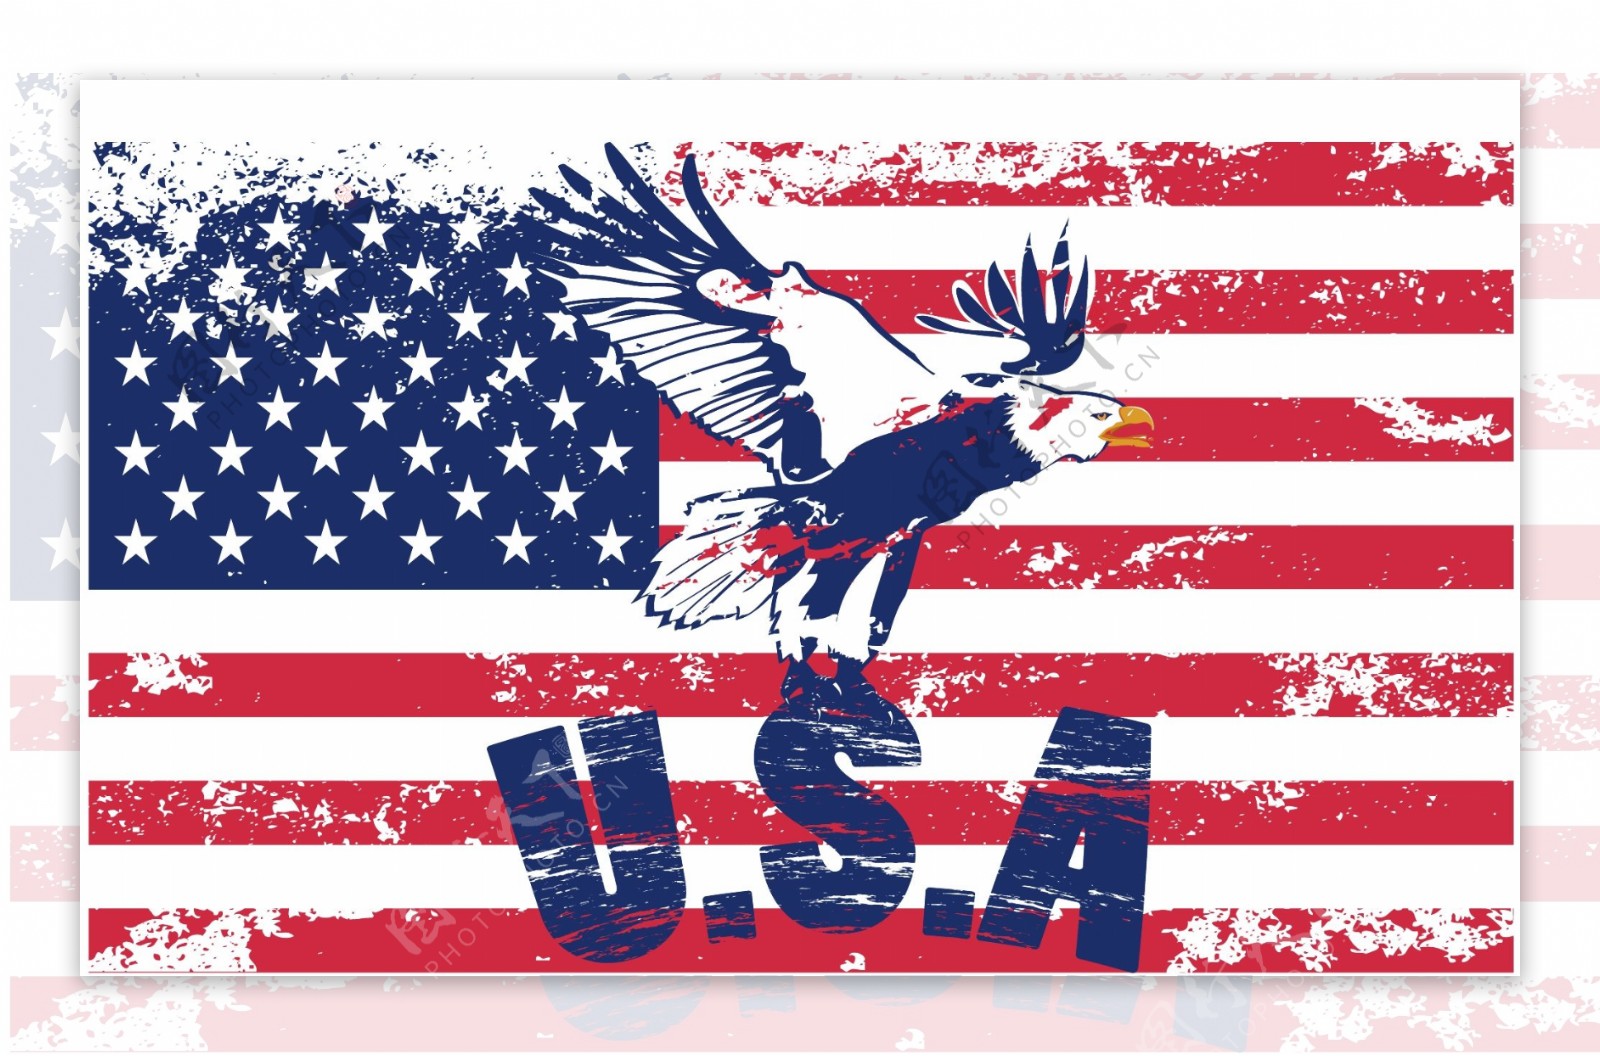 美国国旗设计矢量素材4